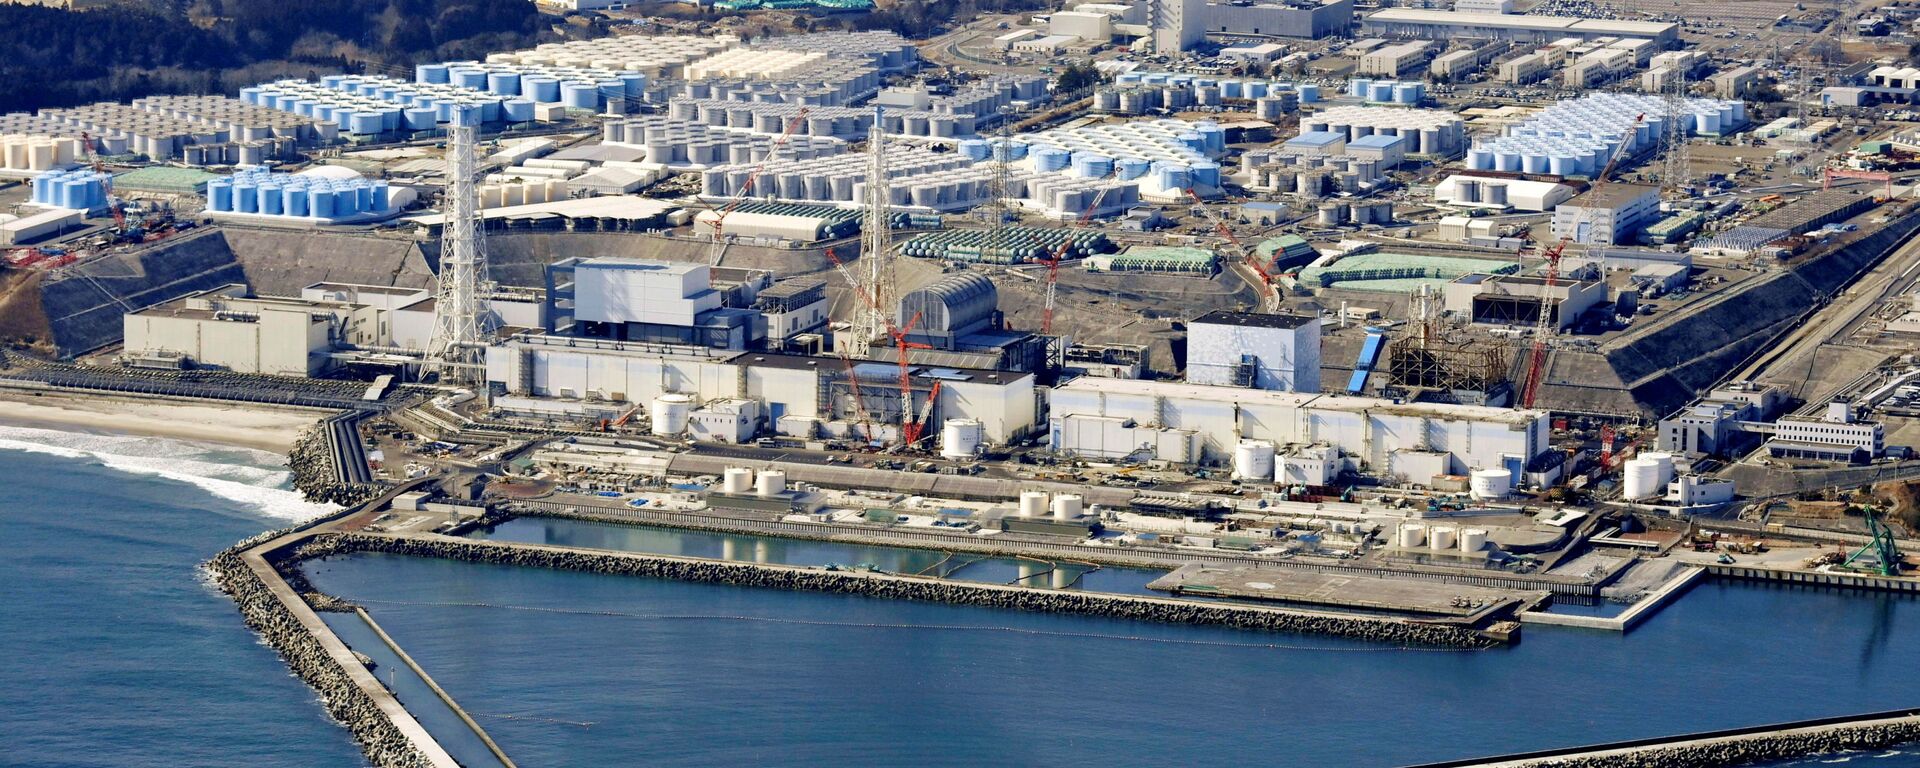 福岛第一核电站1号机核反应堆安全壳中检测出来自核残渣的物质